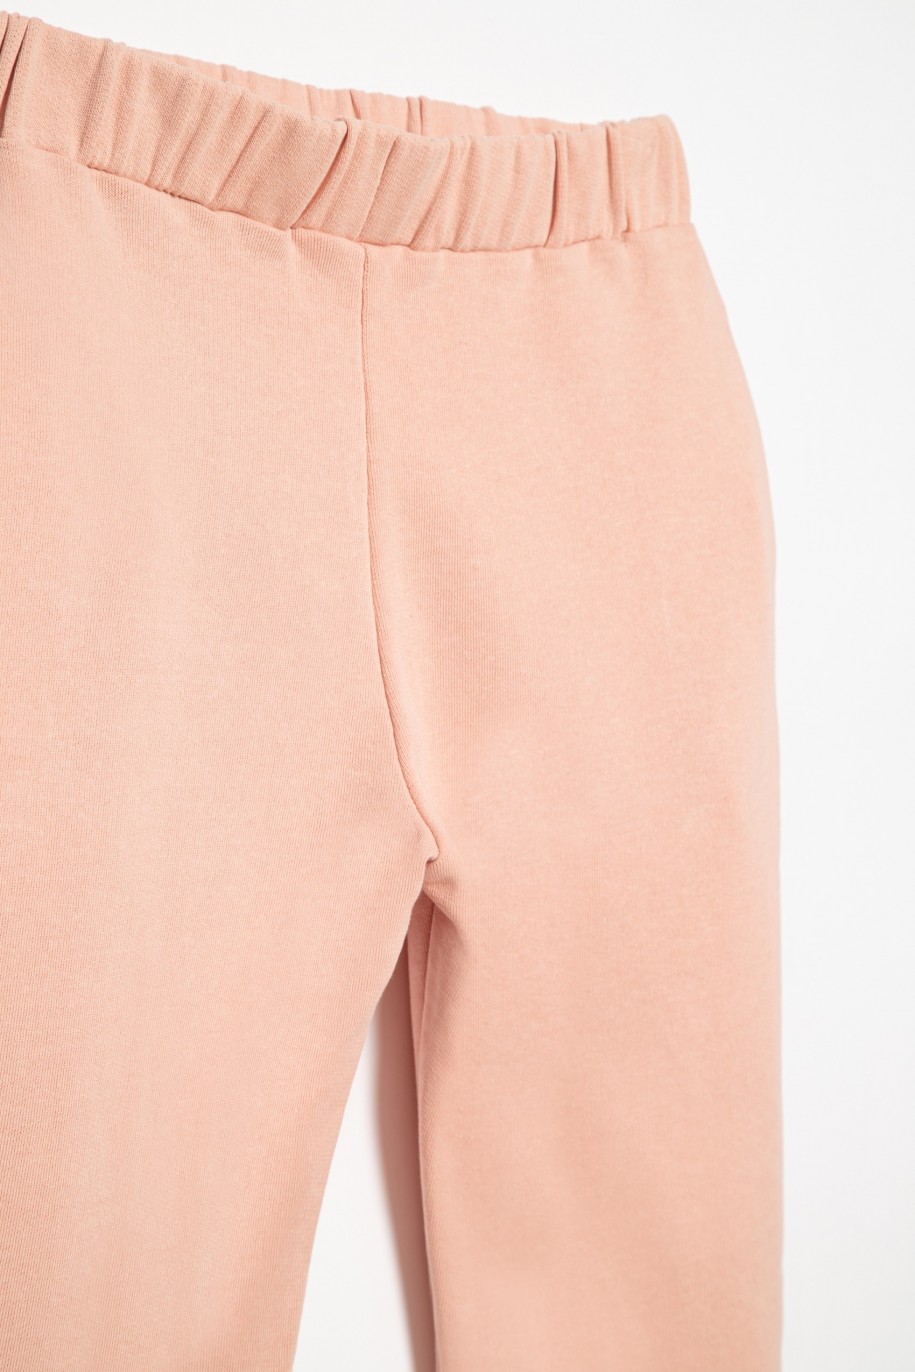 Różowe spodnie dresowe dla dziewczyny - 31948